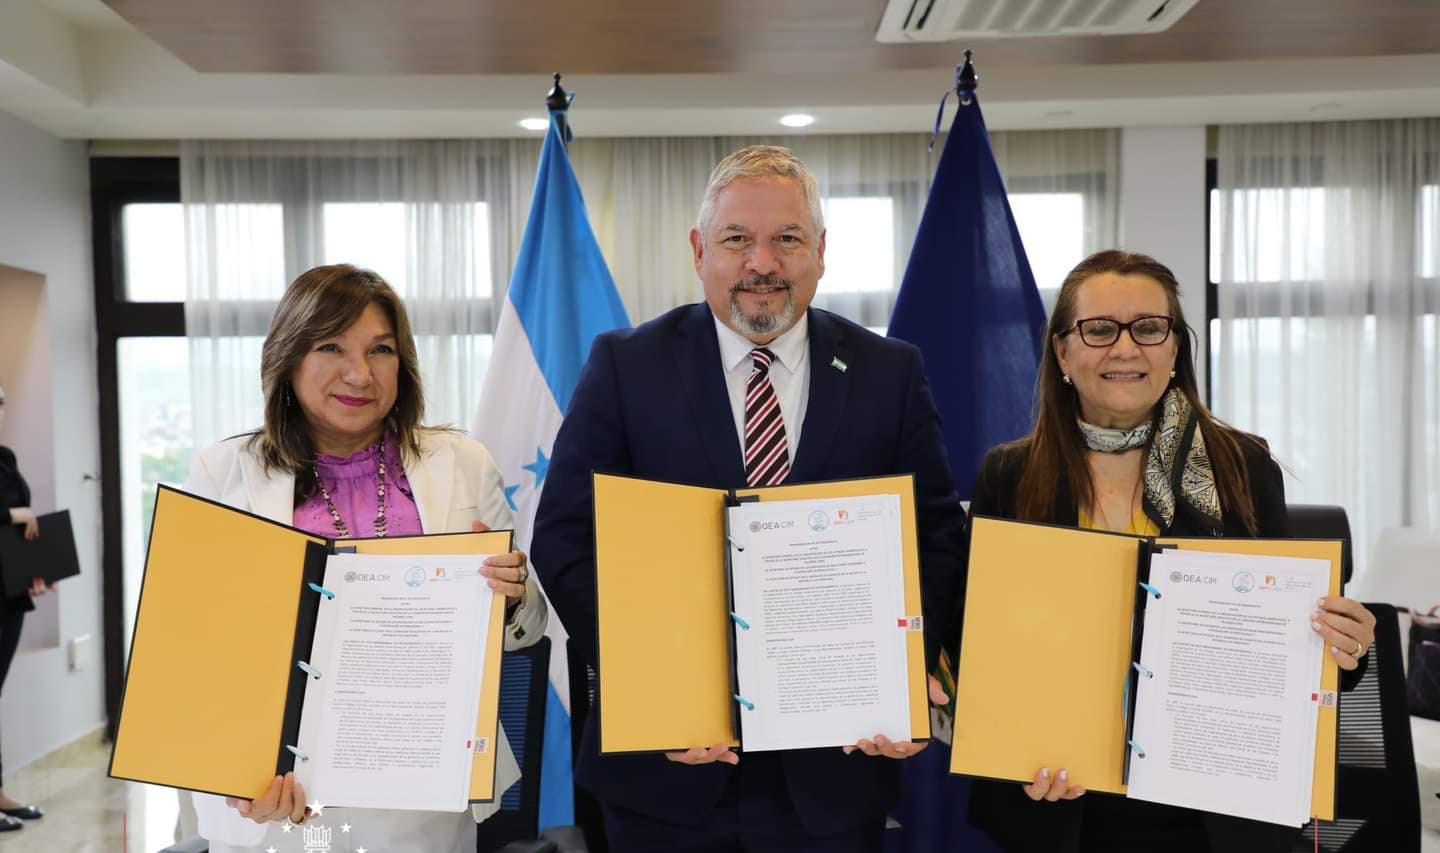 Honduras une esfuerzos con CIM/OEA para promover igualdad de género en la diplomacia